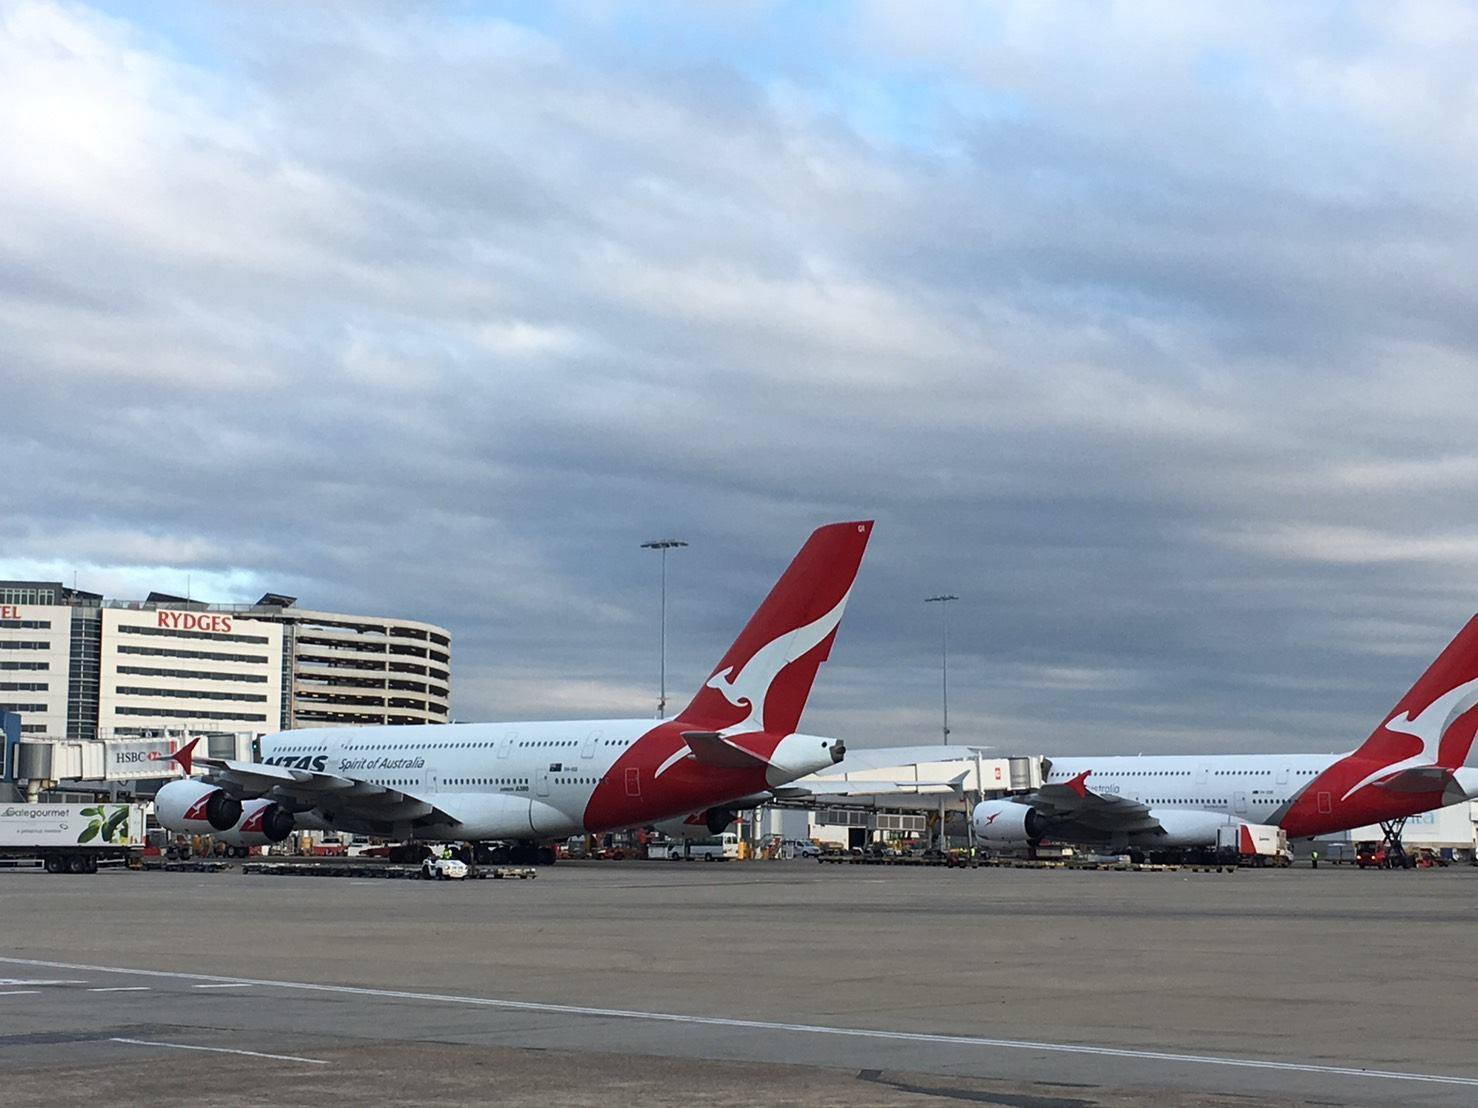 シドニー キングスフォードスミス 空港乗り継ぎ トランジット 方法と待ち時間の過ごし方 ロコタビ